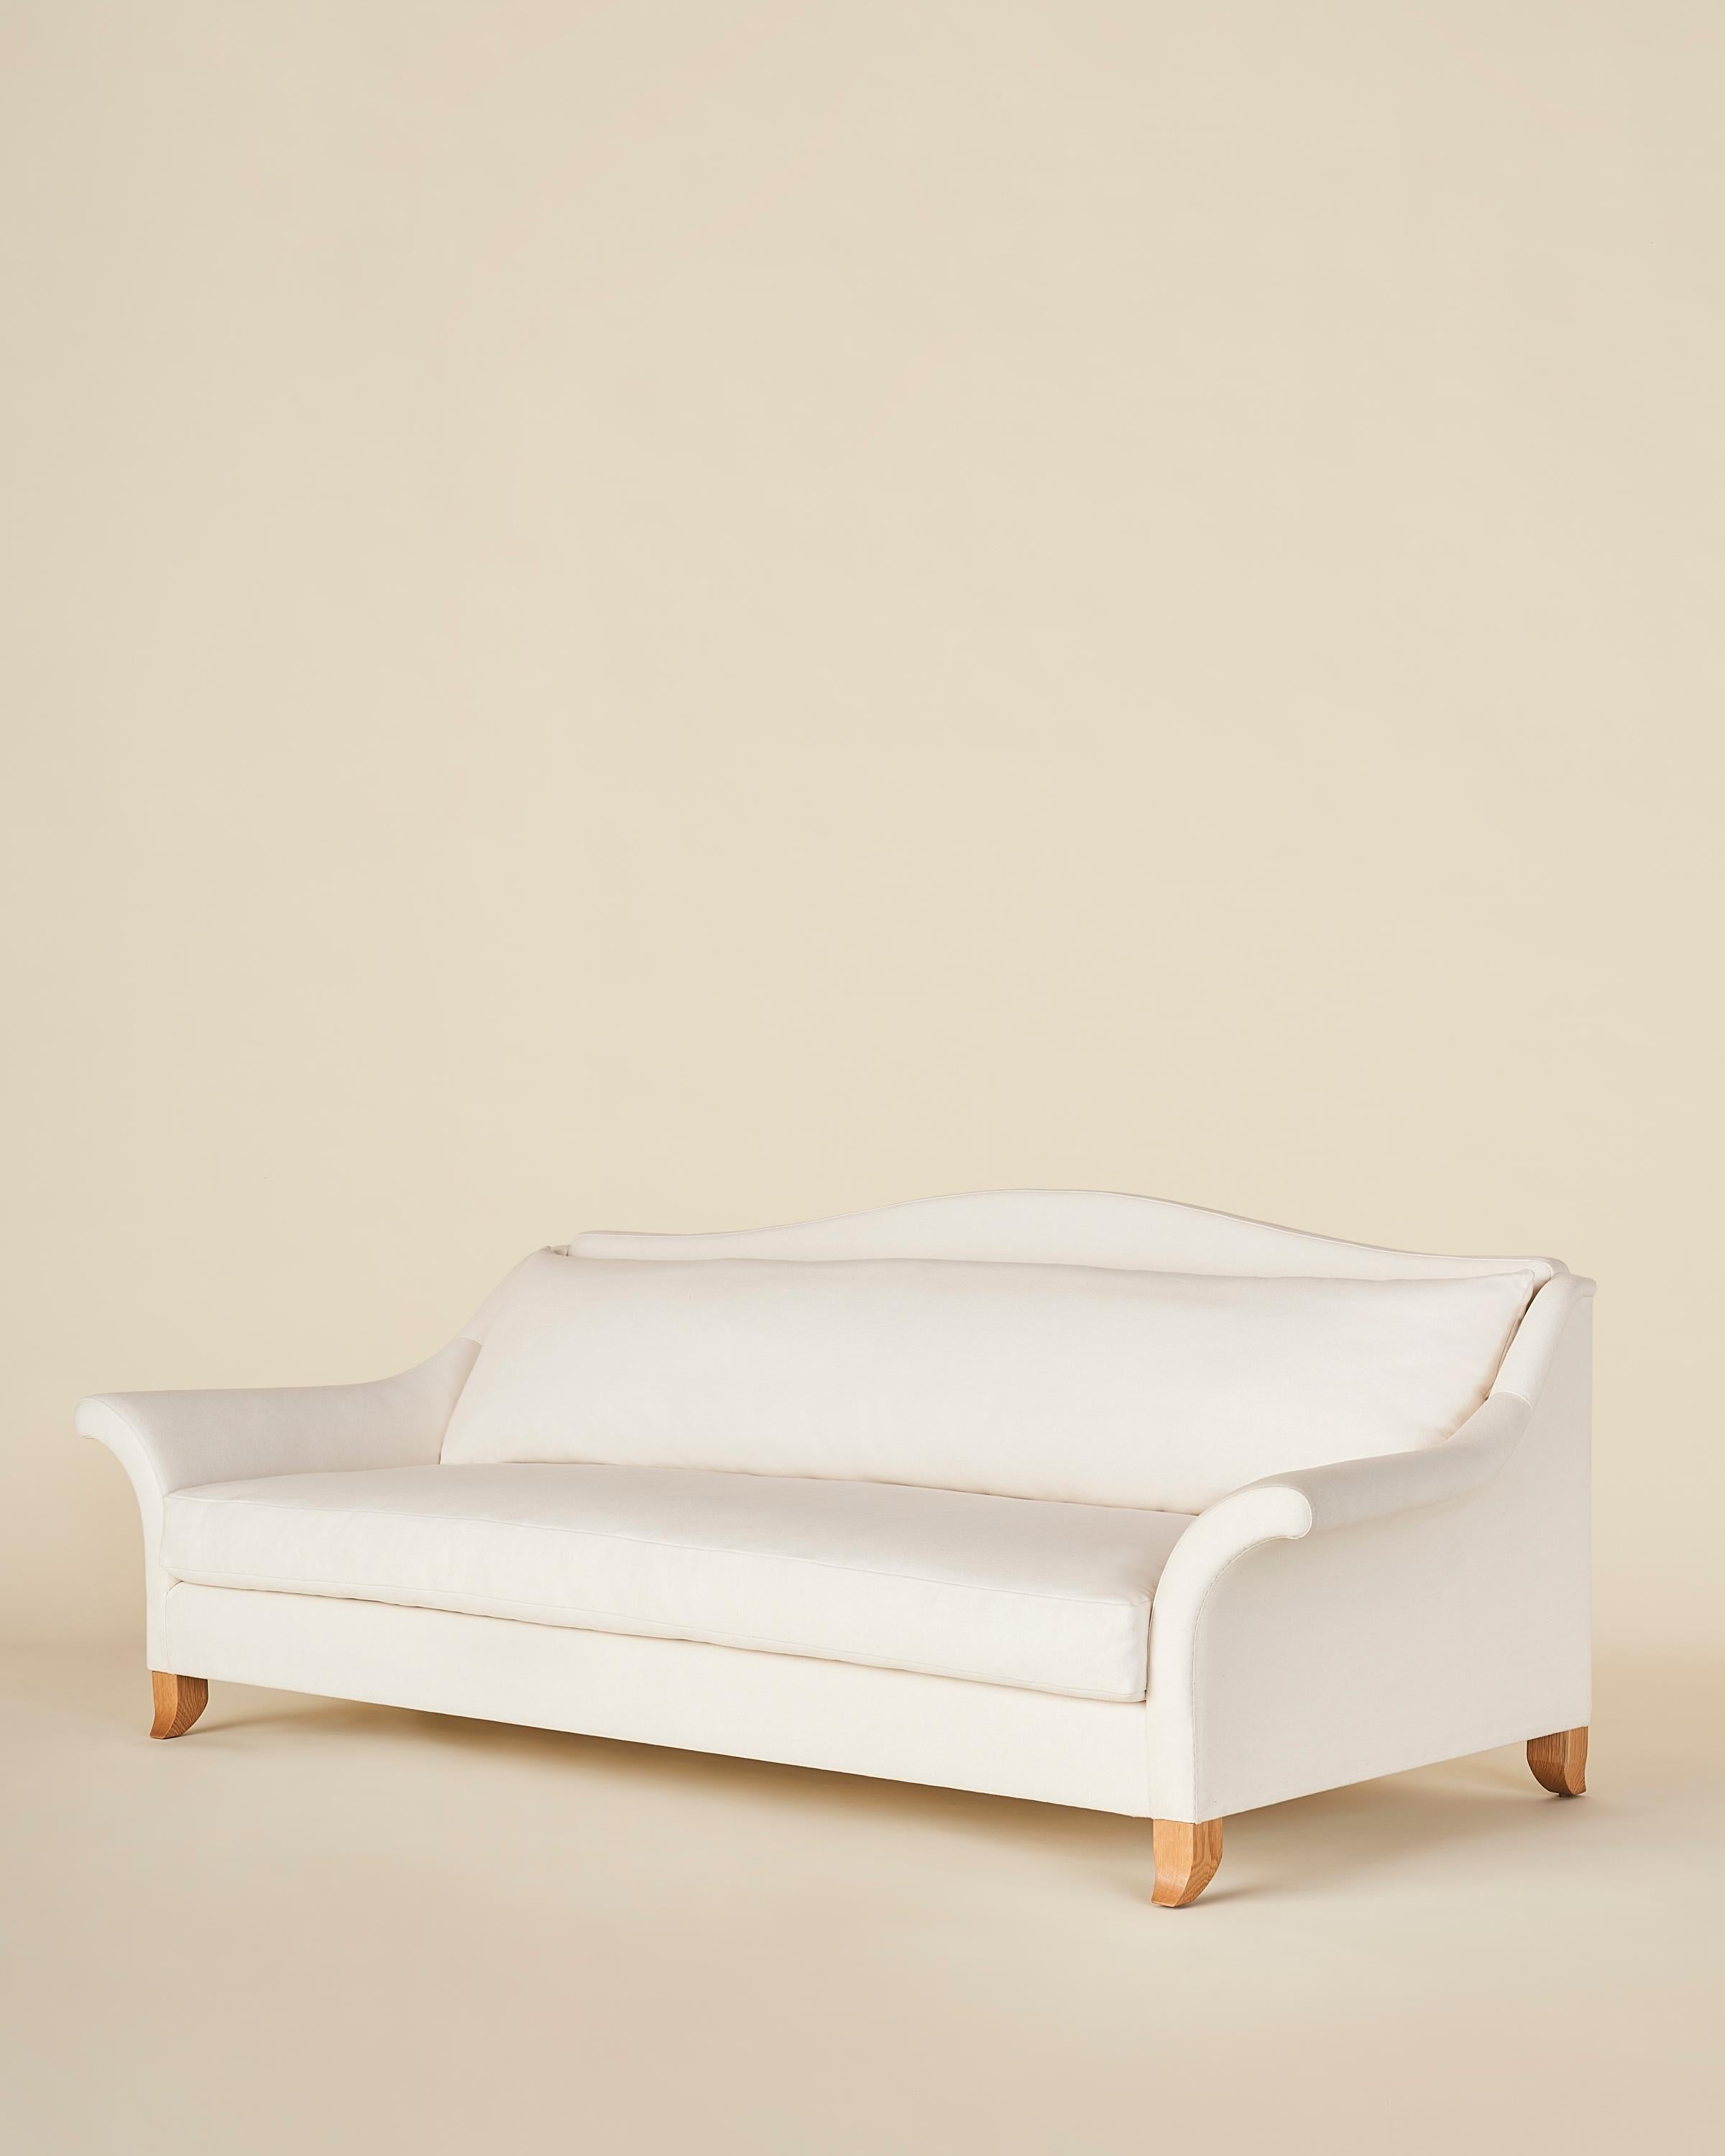 Ein klassisches Camelback-Sofa mit dramatisch ausgestellten Armlehnen und ausgestellten Beinen aus massiver Eiche. Die einzelnen Sitz- und Rückenkissen sorgen für einen nahtlosen und klaren Look. Das Stück ist aus einem massiven Eichenholzrahmen